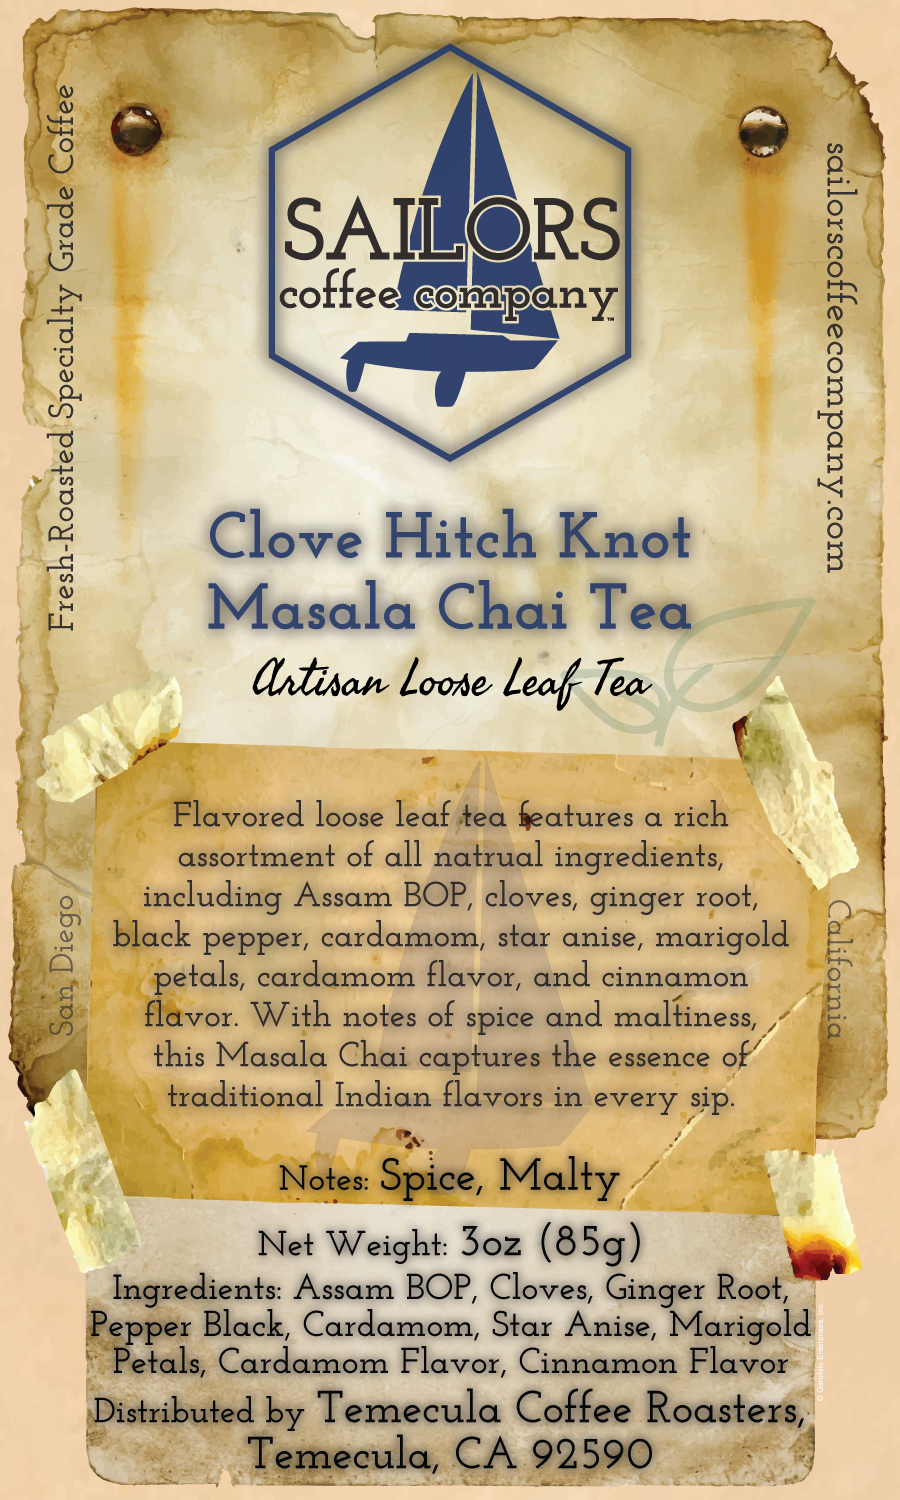 Clove Hitch Knot Masala Chai